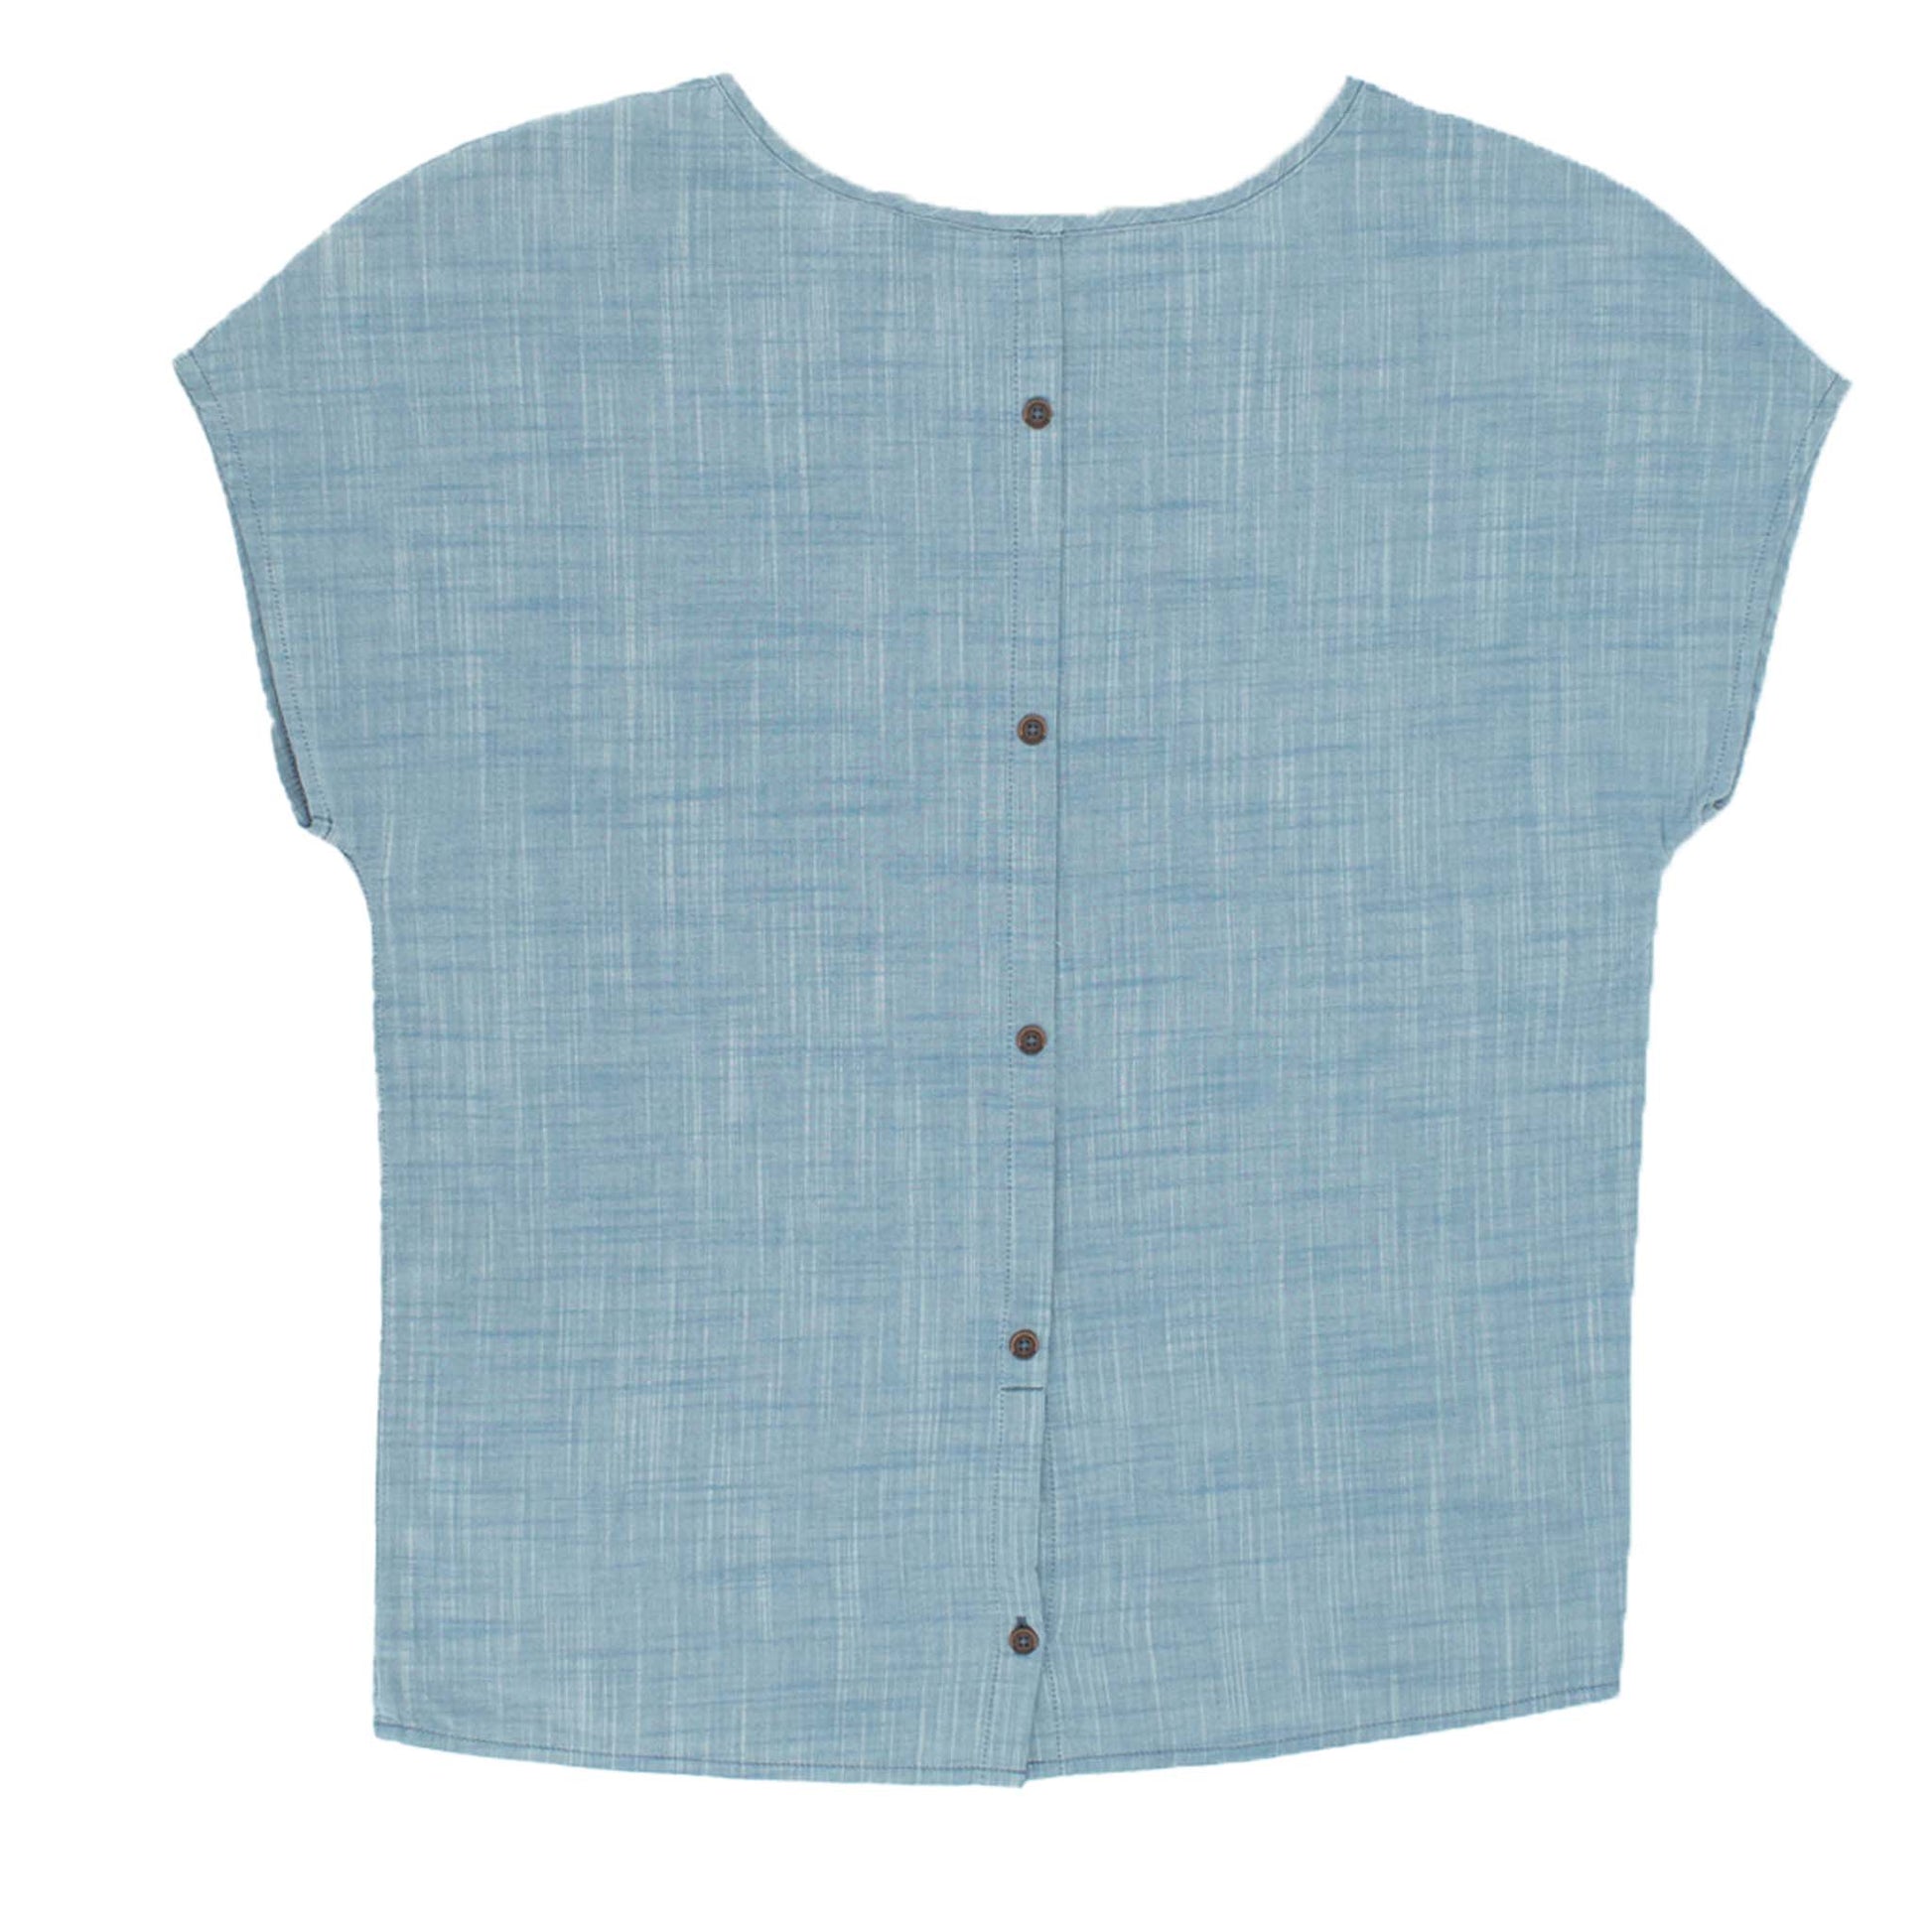 Jack Wolfskin Shirt Linen Look Top Damen kurzarm Bluse Blau 1402781-1588-2